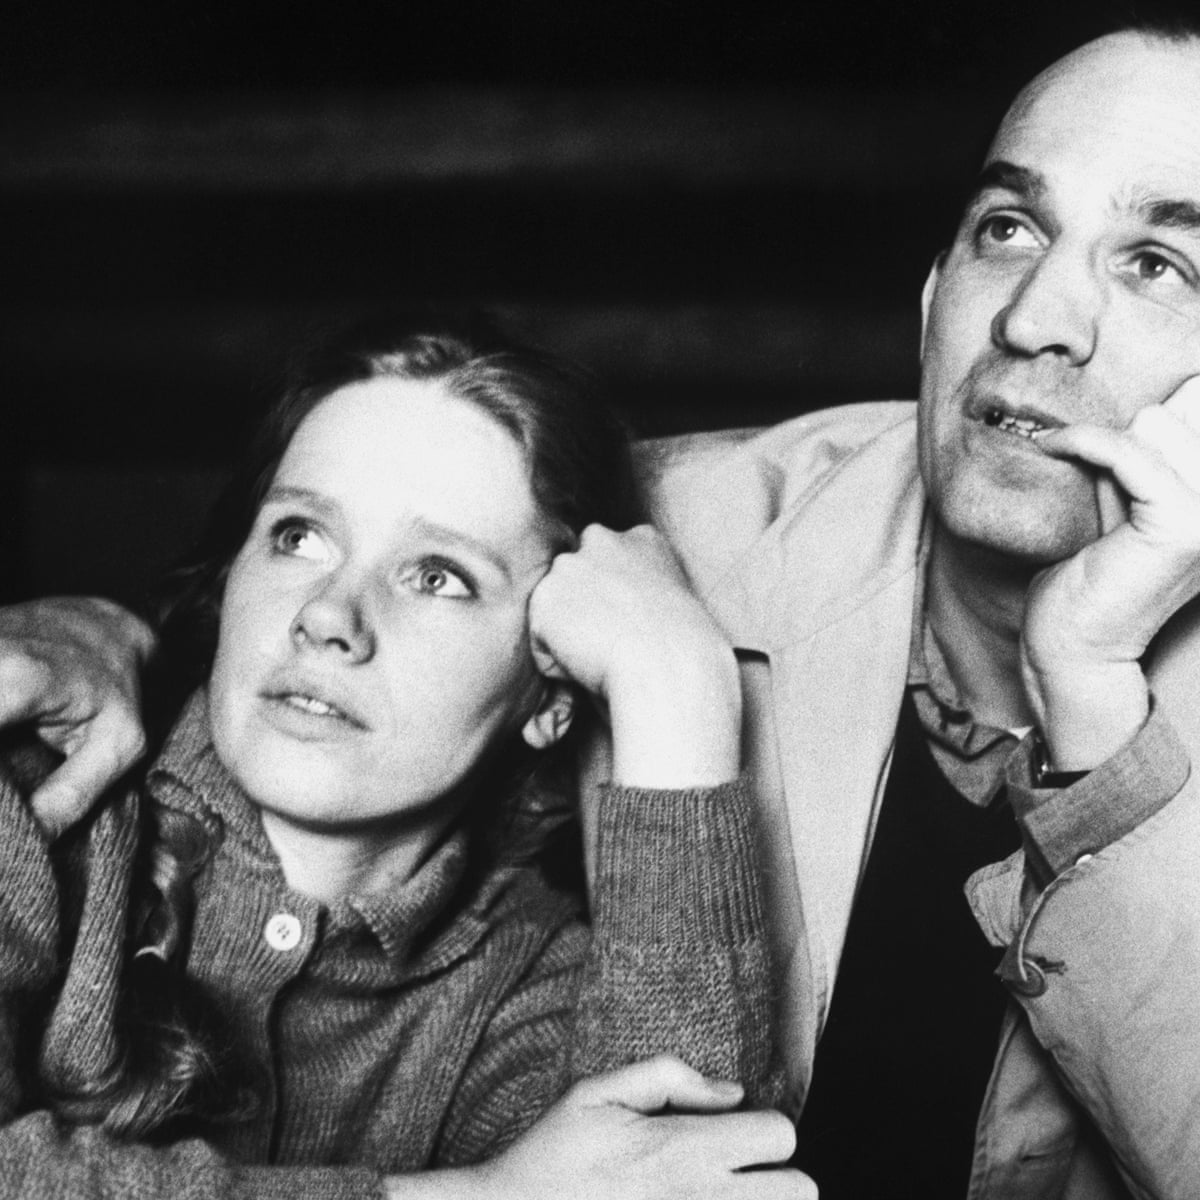 Hard Hitting Film Takes Aim At Ingmar Bergman's Flawed Way With Women